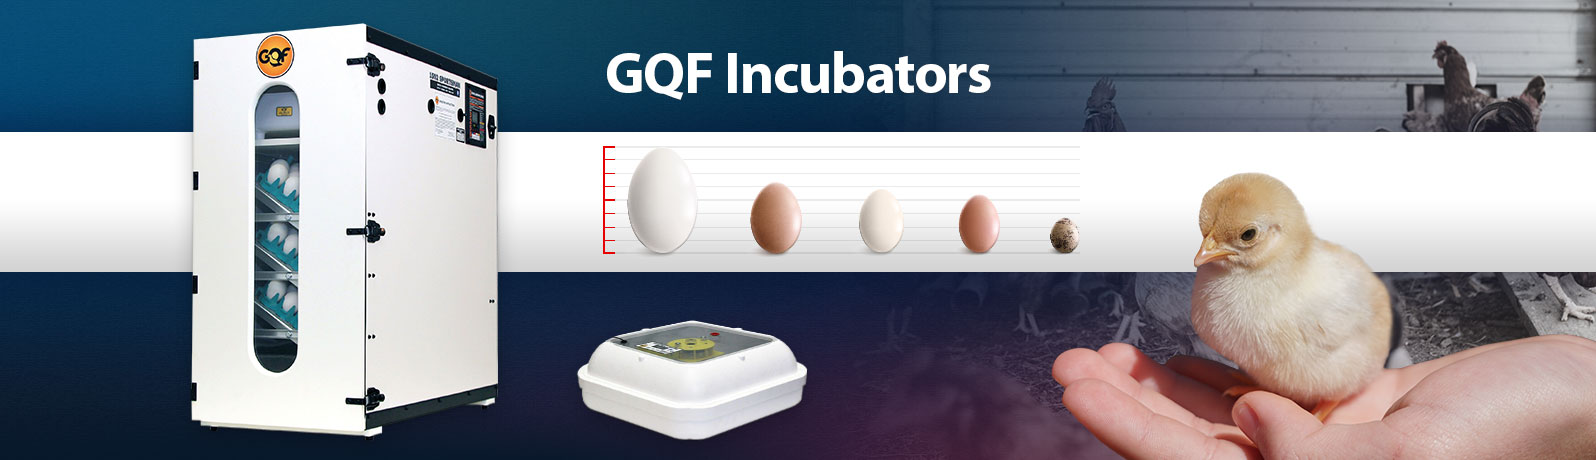 GQF Incubators